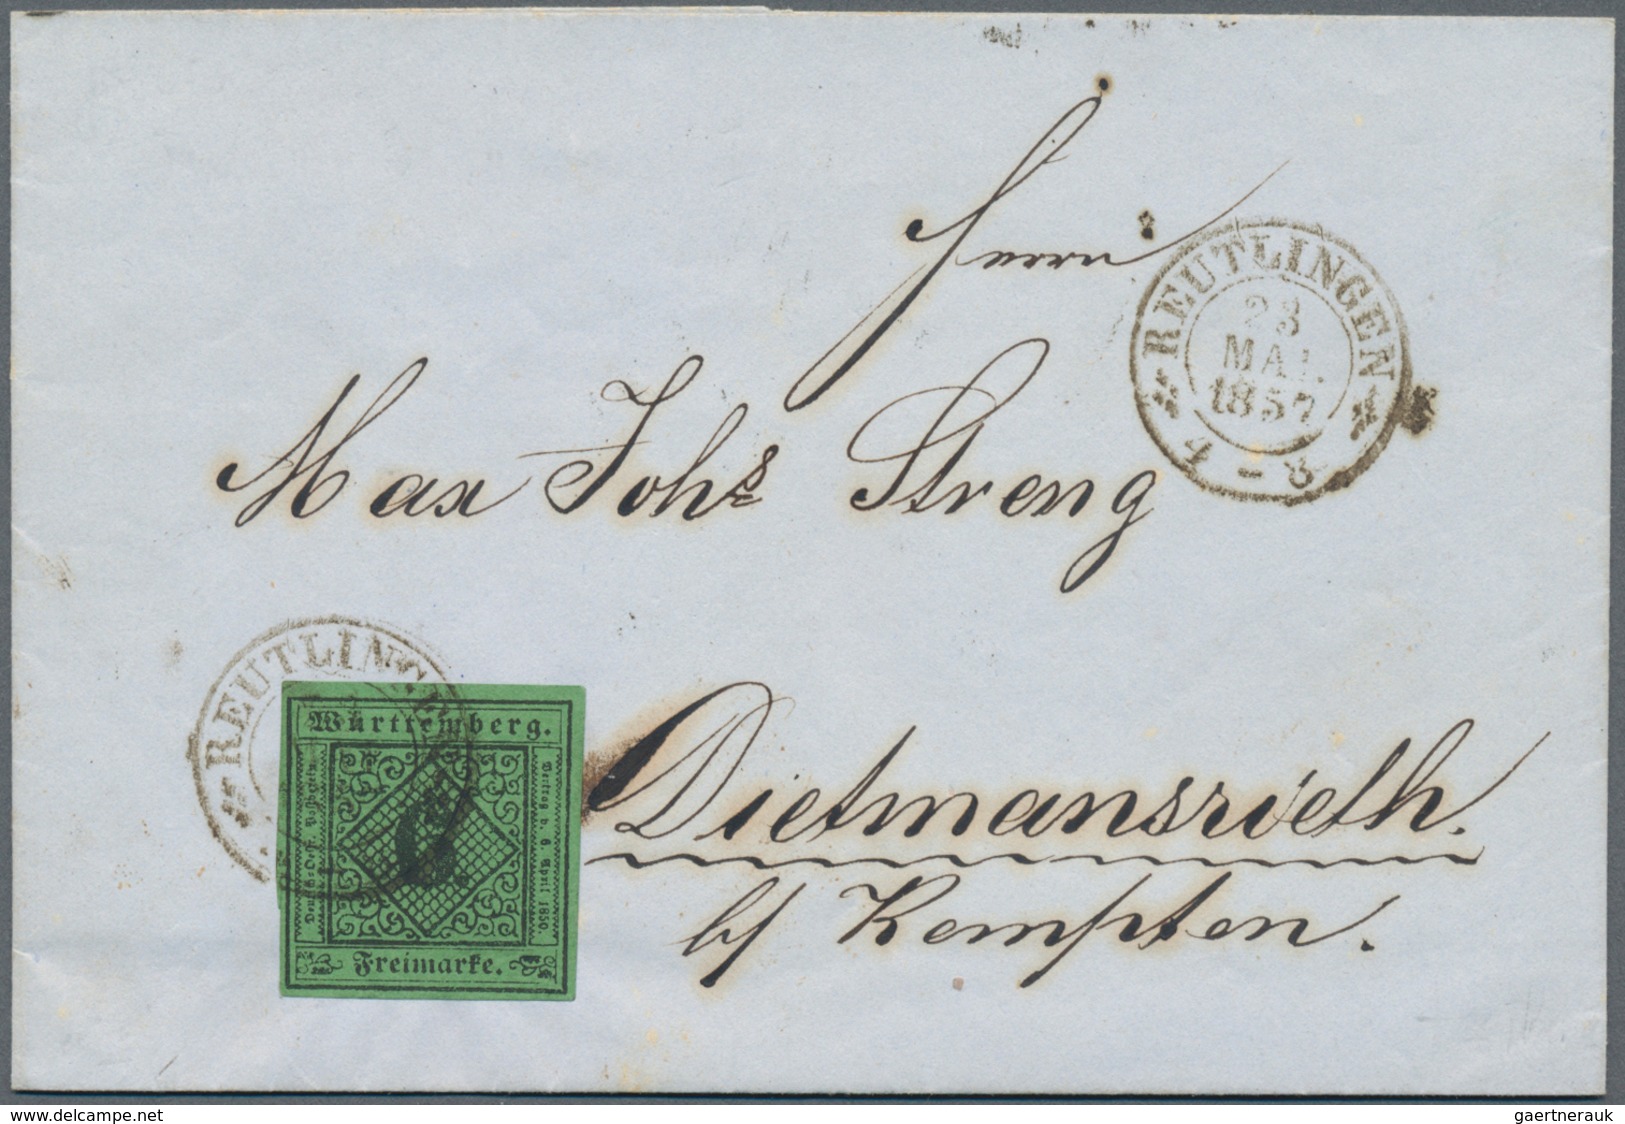 Württemberg - Marken und Briefe: 1851/1874, wertvolle Briefsammlung im Album mit 56 Belegen dabei ei